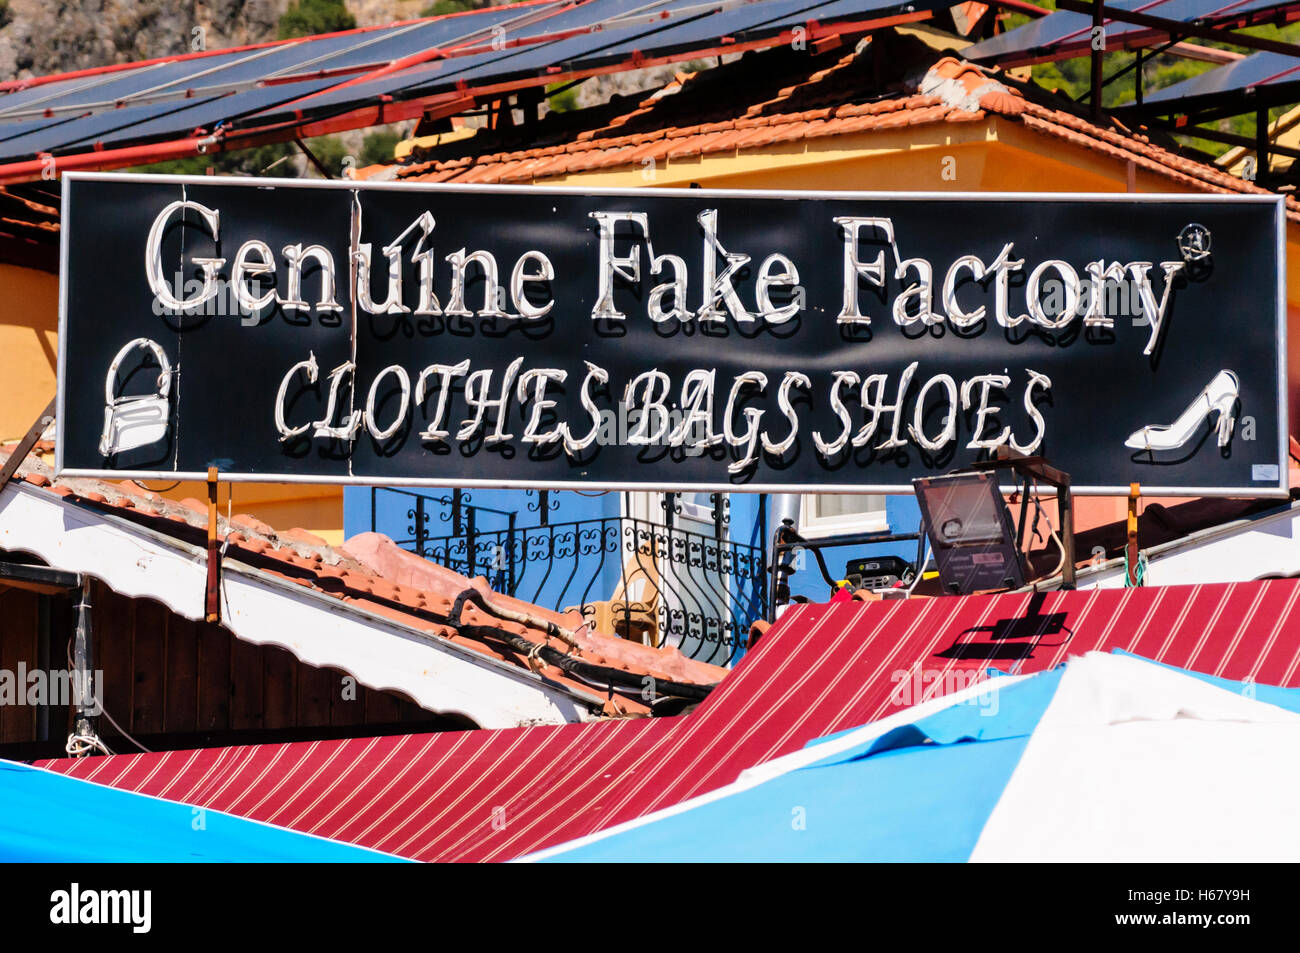 Sign in una città turca denominata "Genuine Fake Factory' di vendita di merci contraffatte clothese, borse e scarpe. Foto Stock